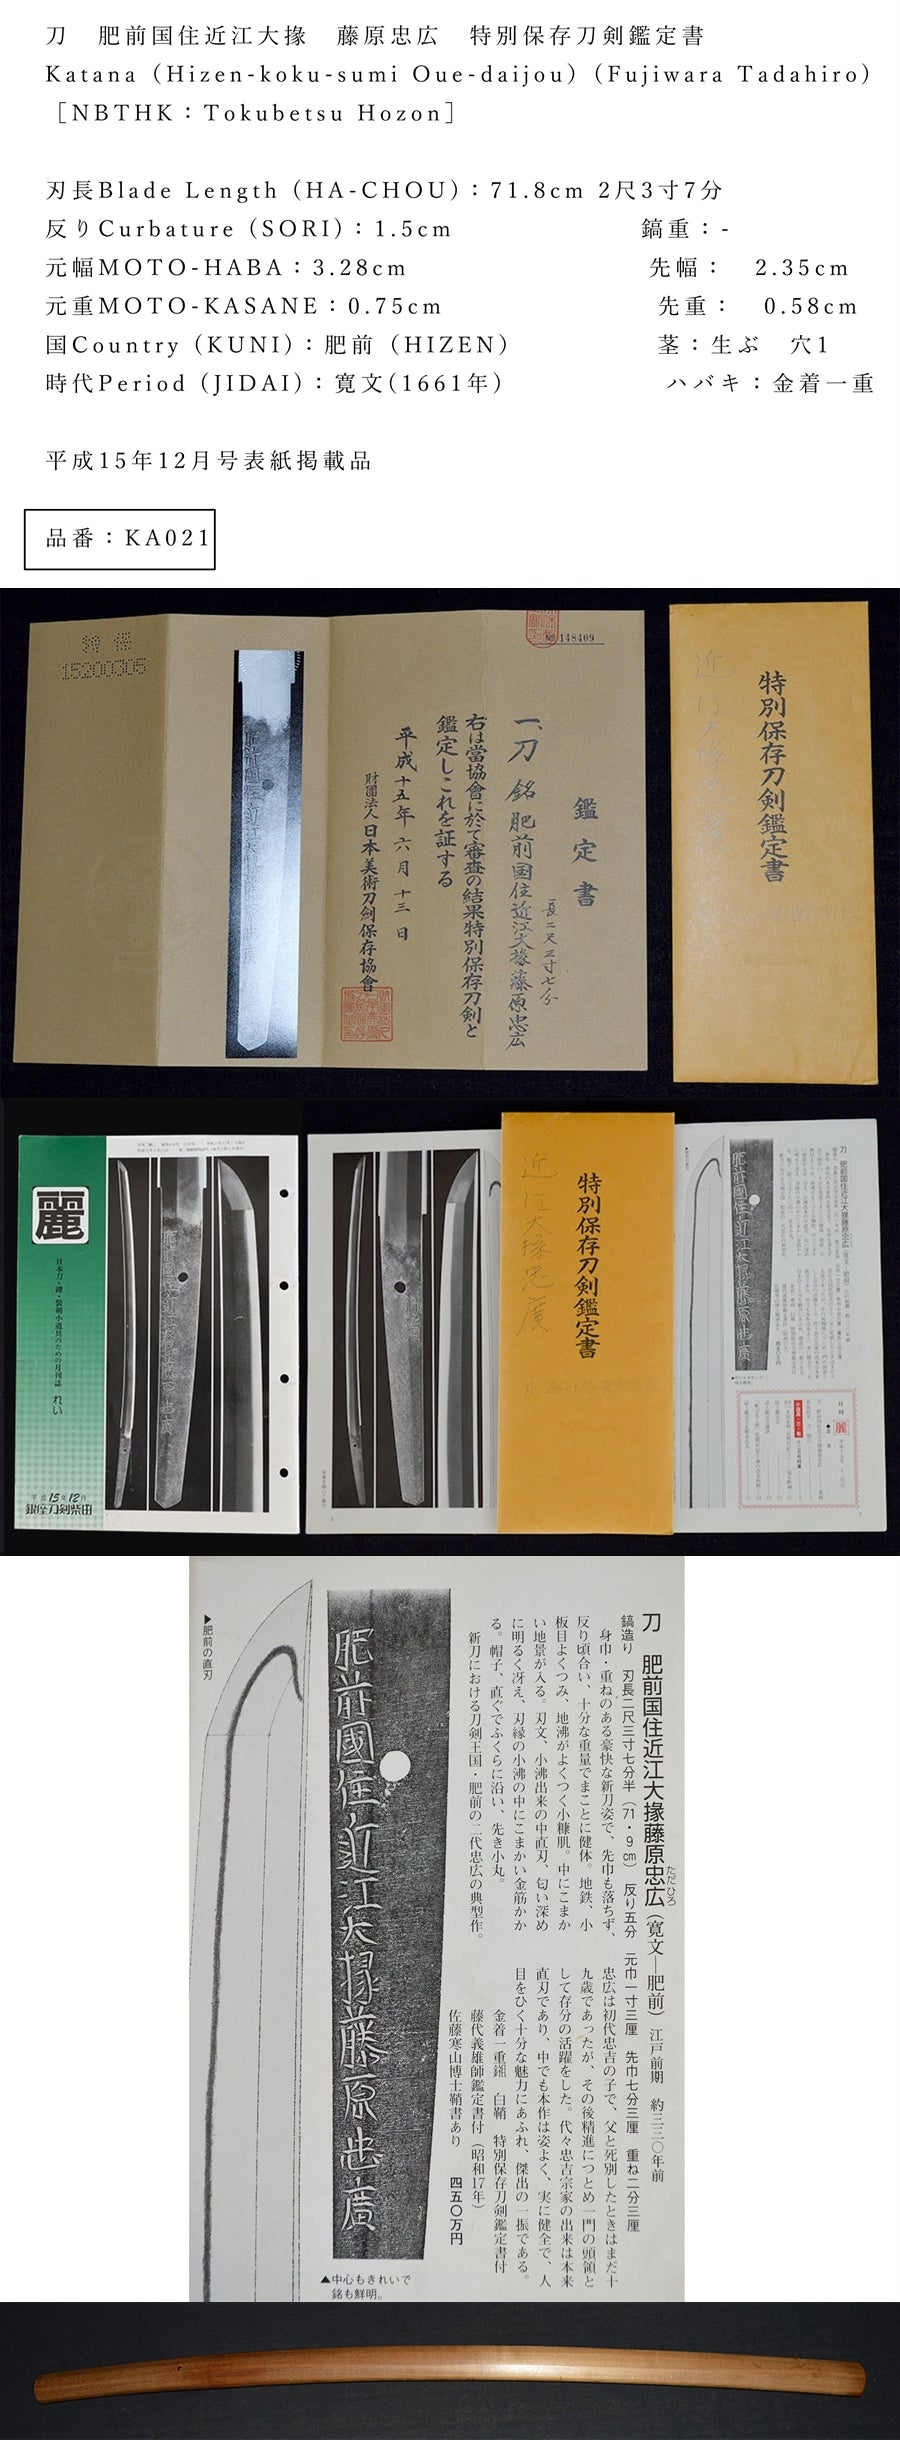 Hizen Kuni Omi Daisho Fujiwara Tadahiro Fujiwara Special Preservation Swordsmana Katana (HIZEN-KOKU-SUMI OUE-DAIJOU) Part number: KA021